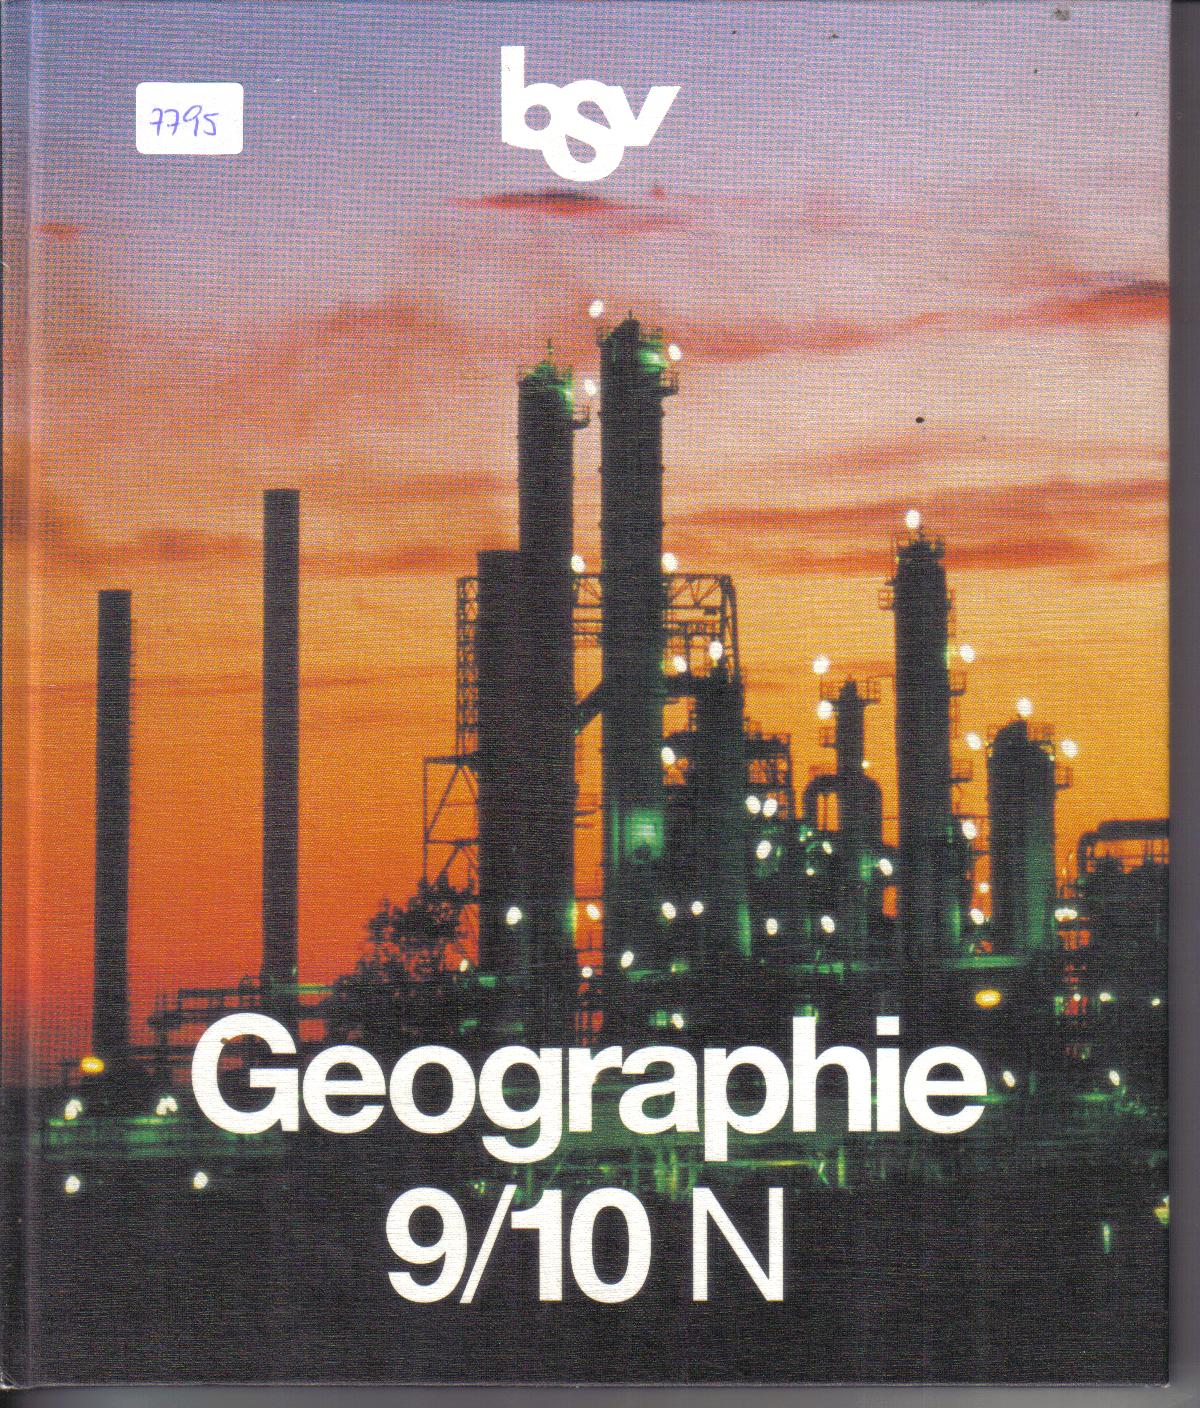 Geographie 9 / 10 N  bsv